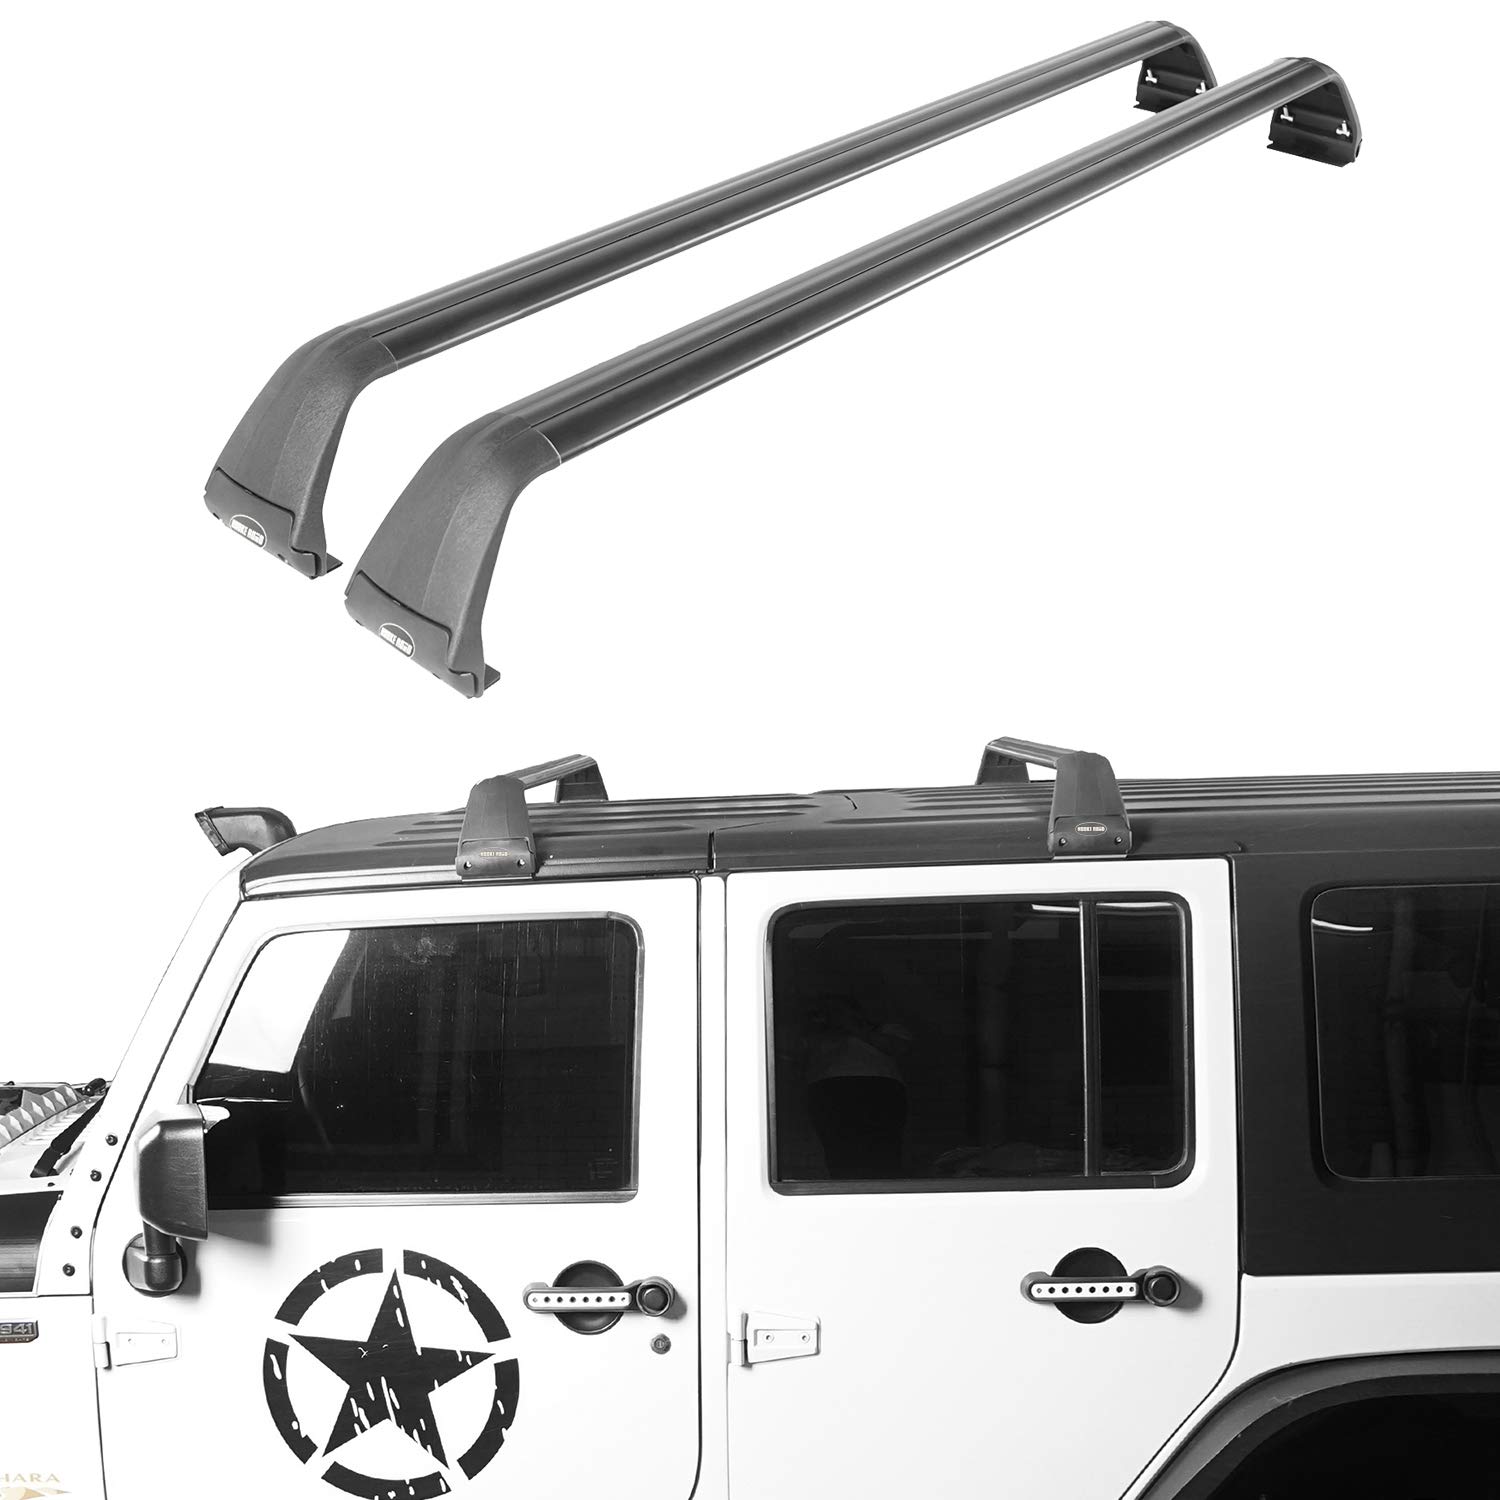 Arriba 79+ imagen jeep wrangler kayak rack hard top